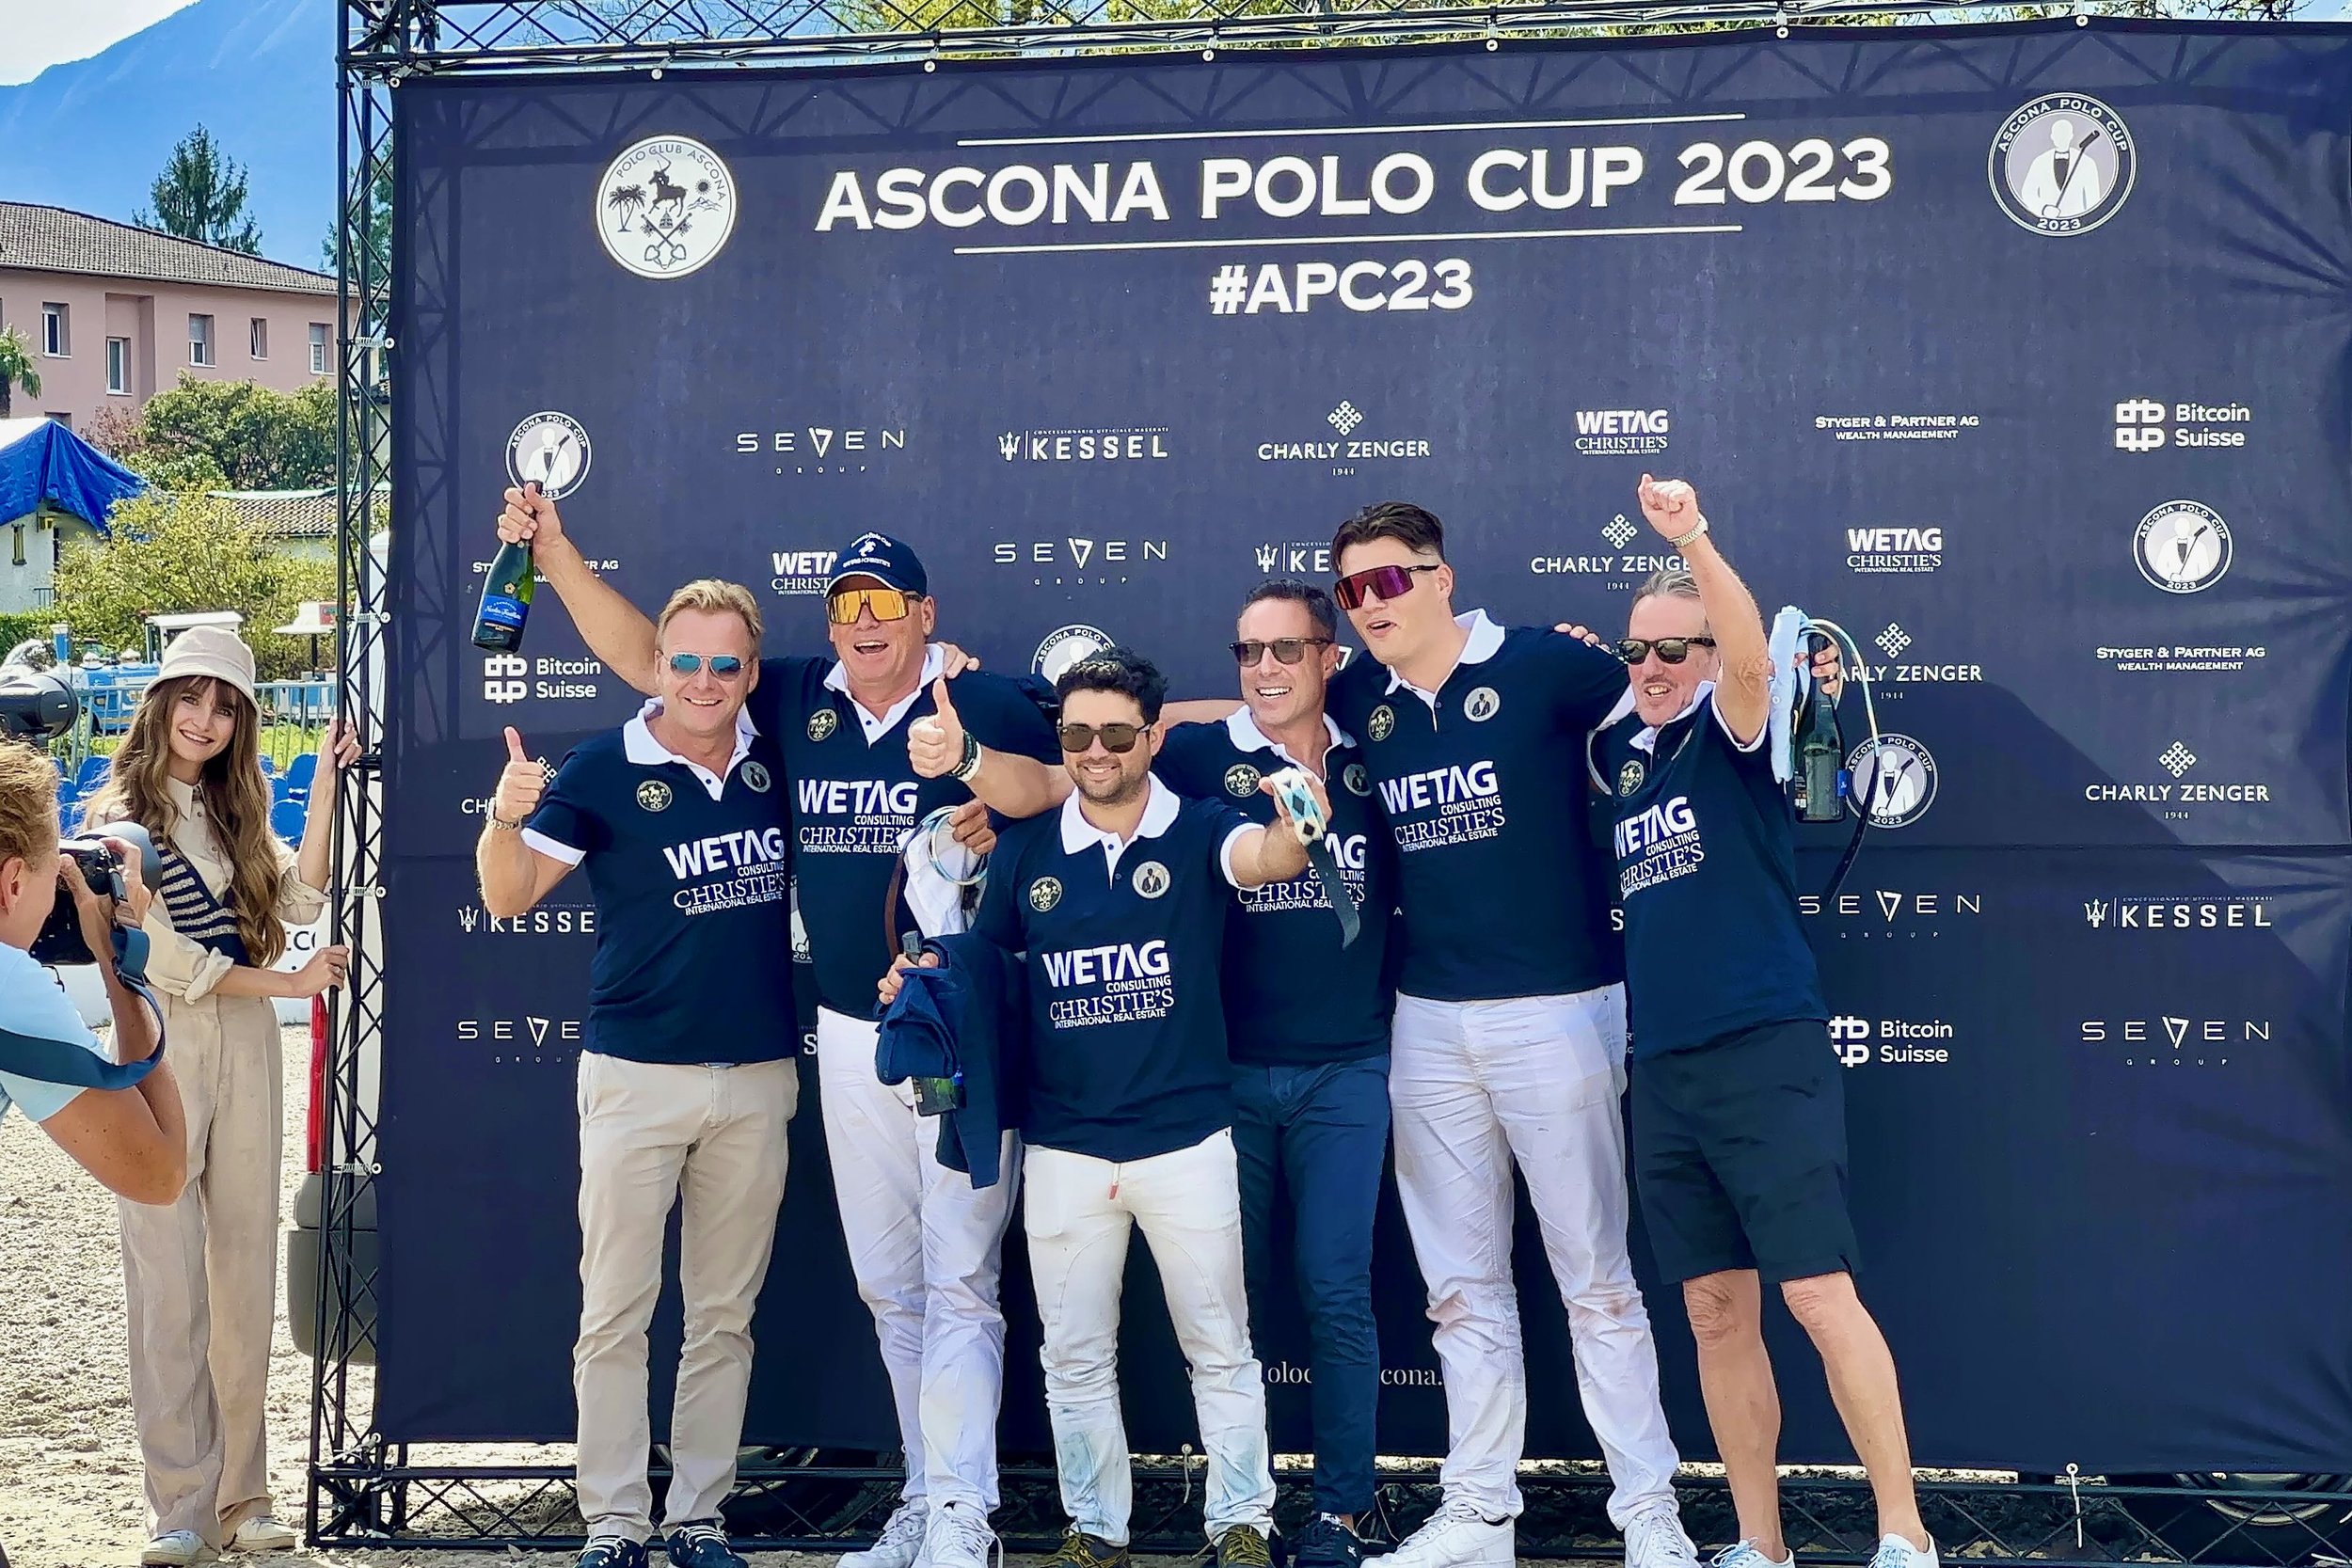 Polo+Ascona+2023+WETAG+CONSULTING+ +1+(1)